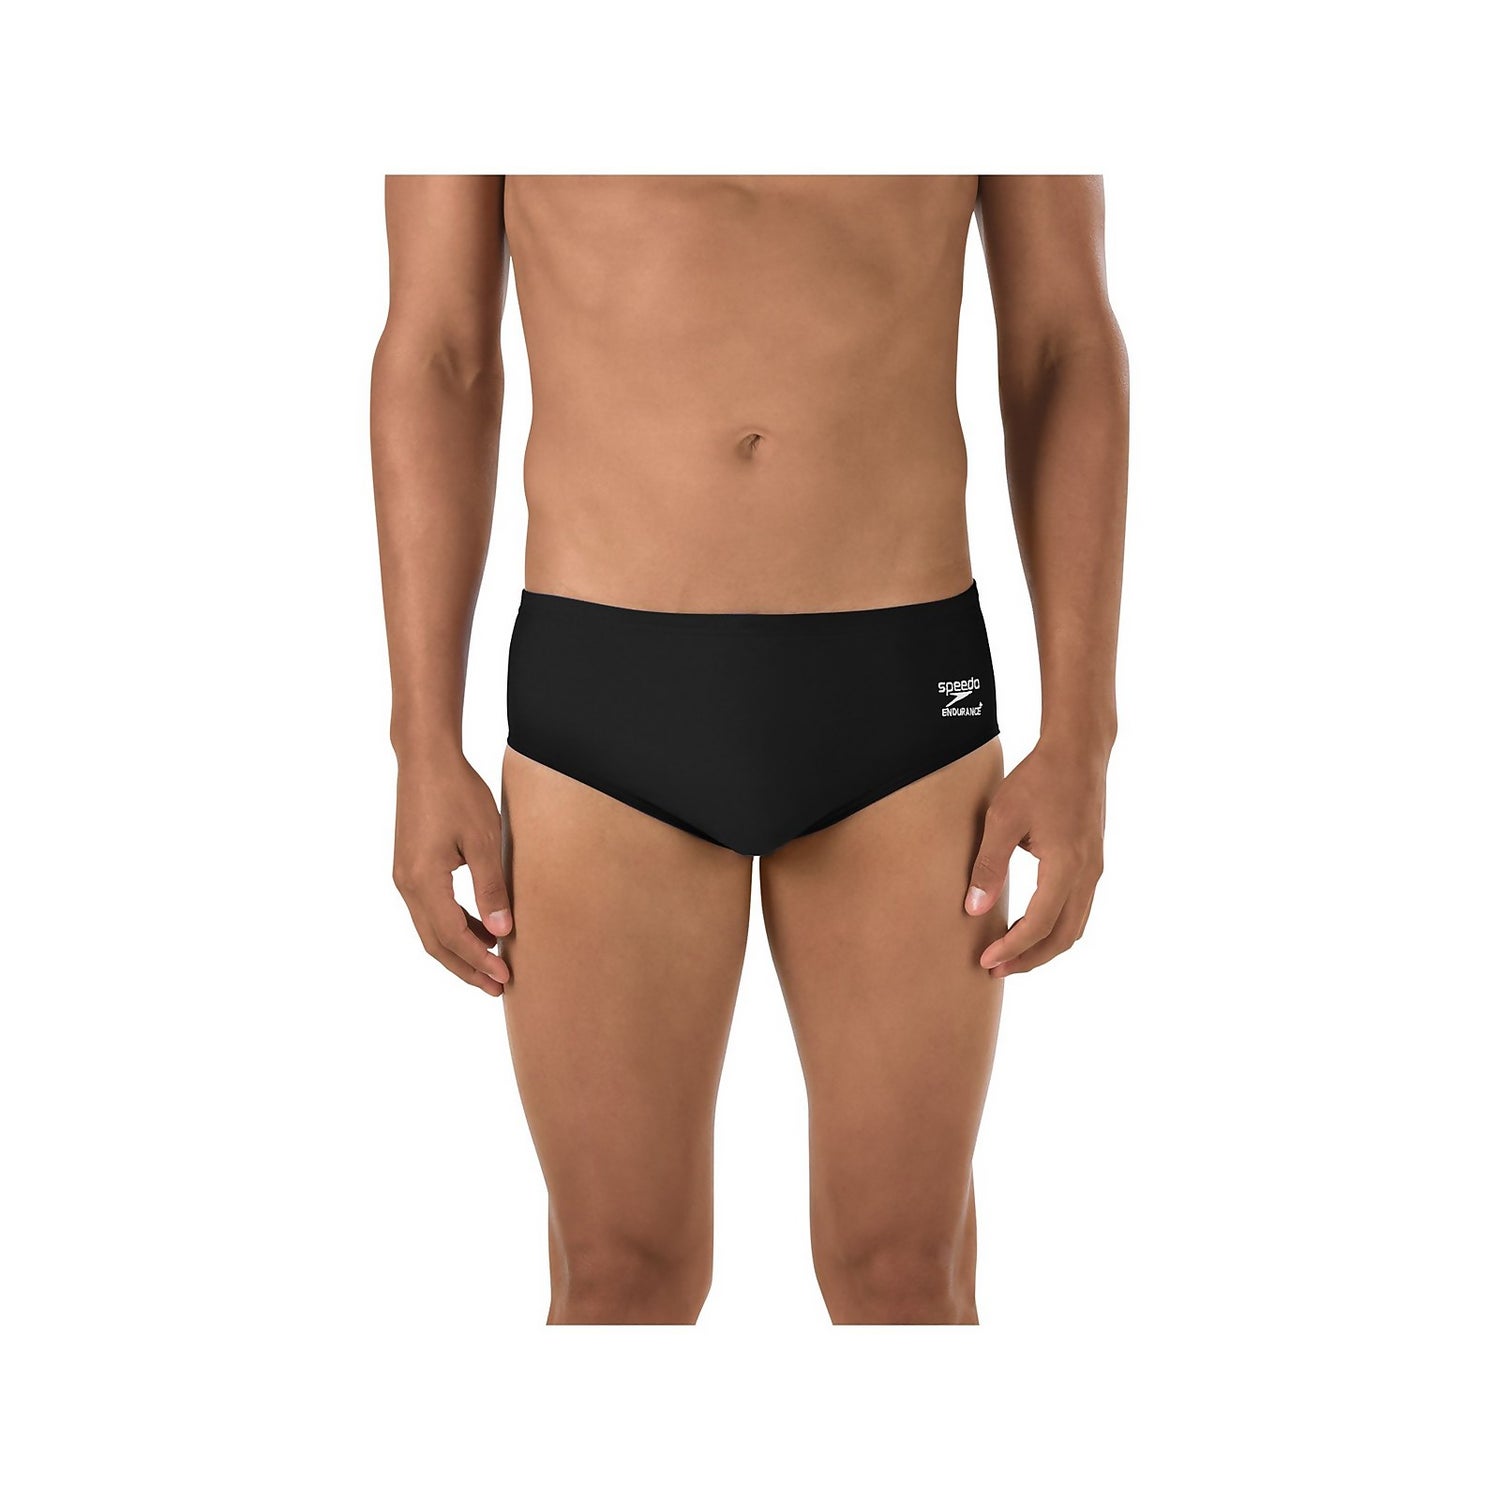 Speedo Male Brief Swimsuit Endurance Solid Speedo Men's and Women's Swimwear 805012-Sapphire-34-P 